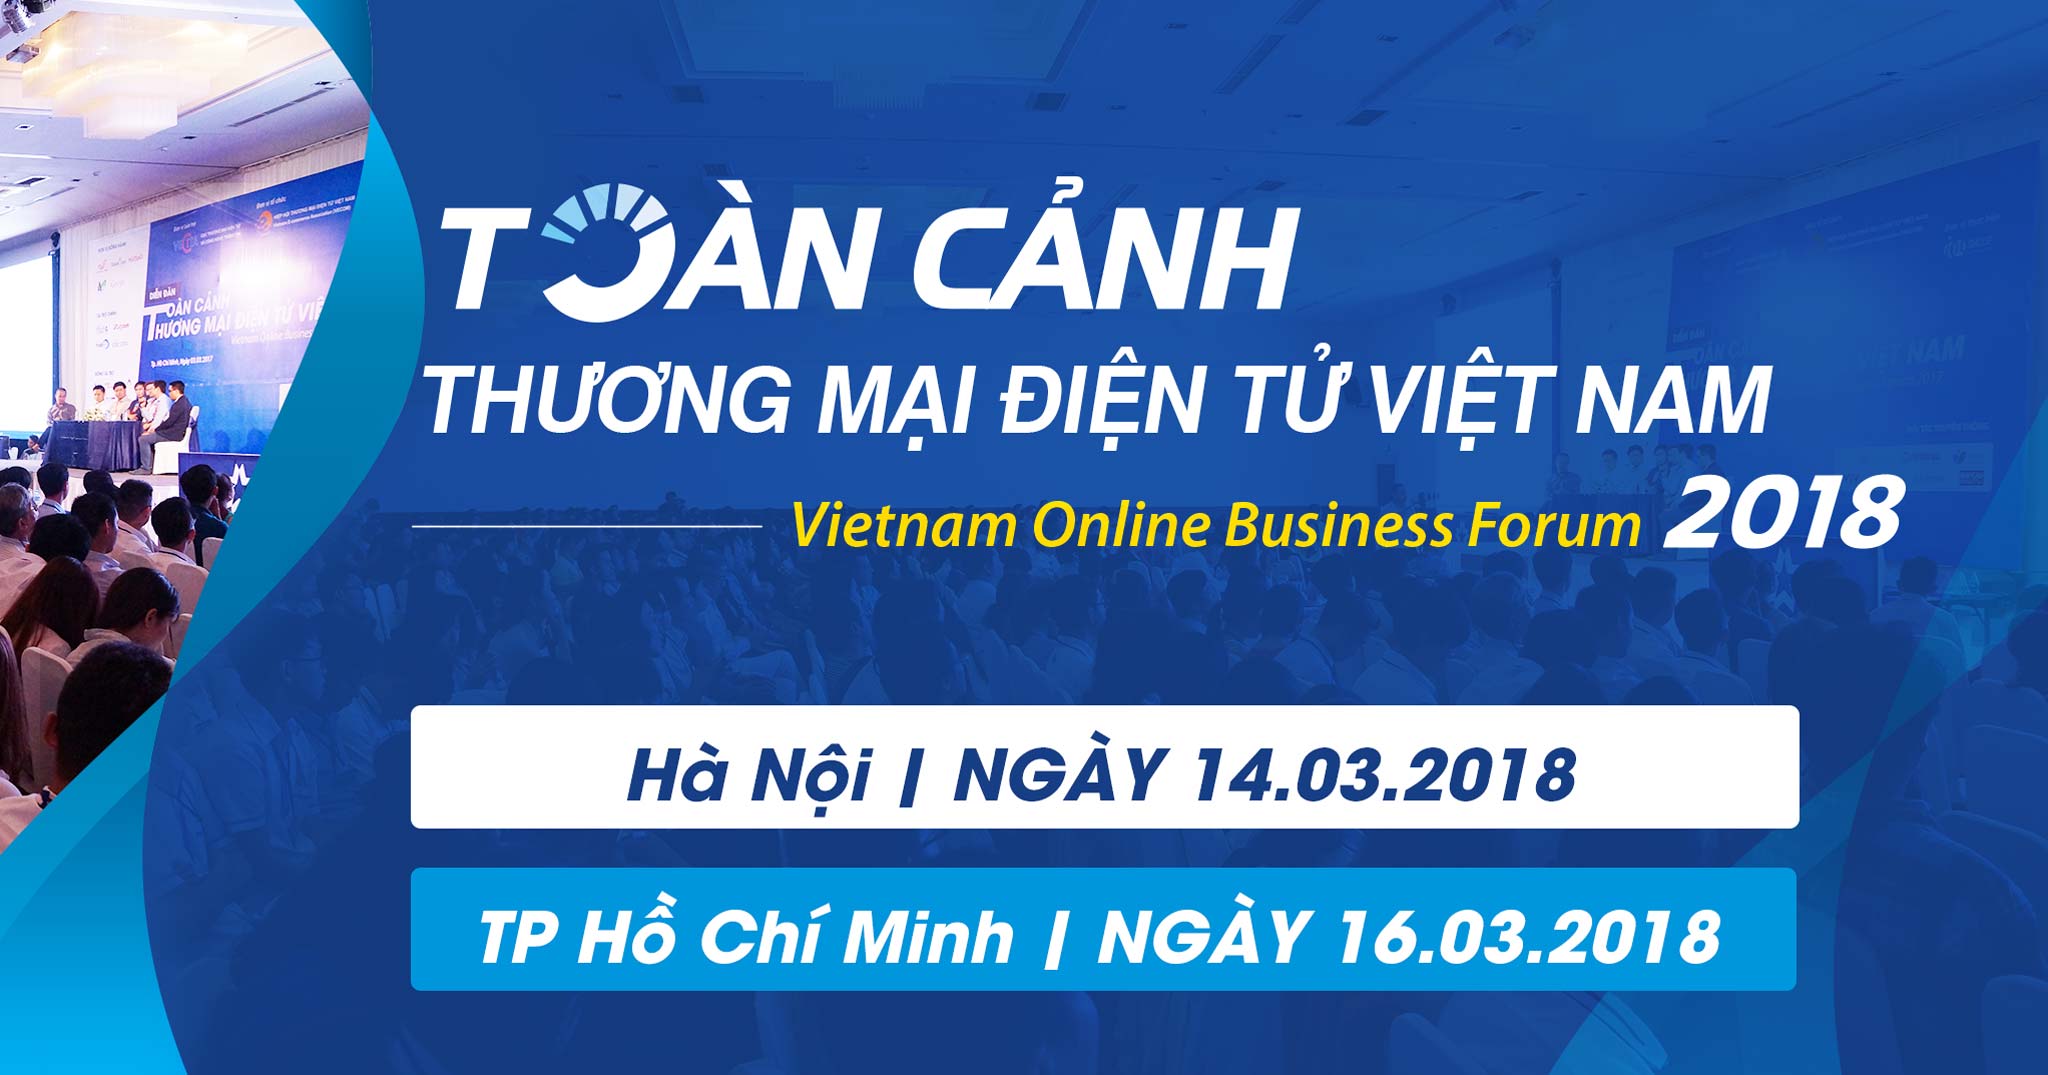 Mời tham dự sự kiện thương mại điện tử Việt Nam VOBF 2018 diễn ra tại TP.HCM và Hà Nội